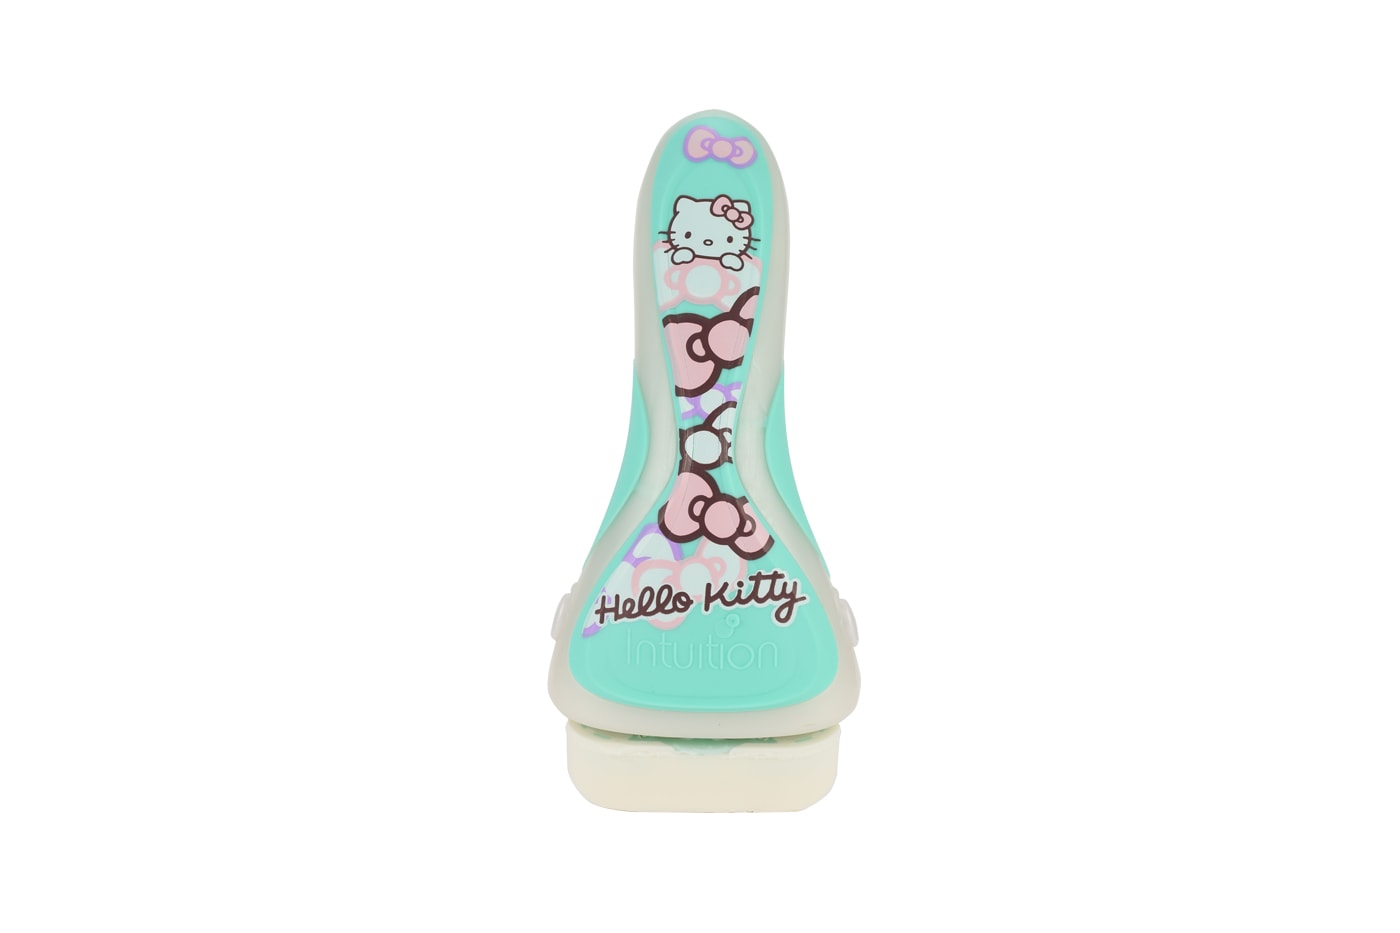 Sanrio x Schick Intuition Hello Kitty Razor Green White